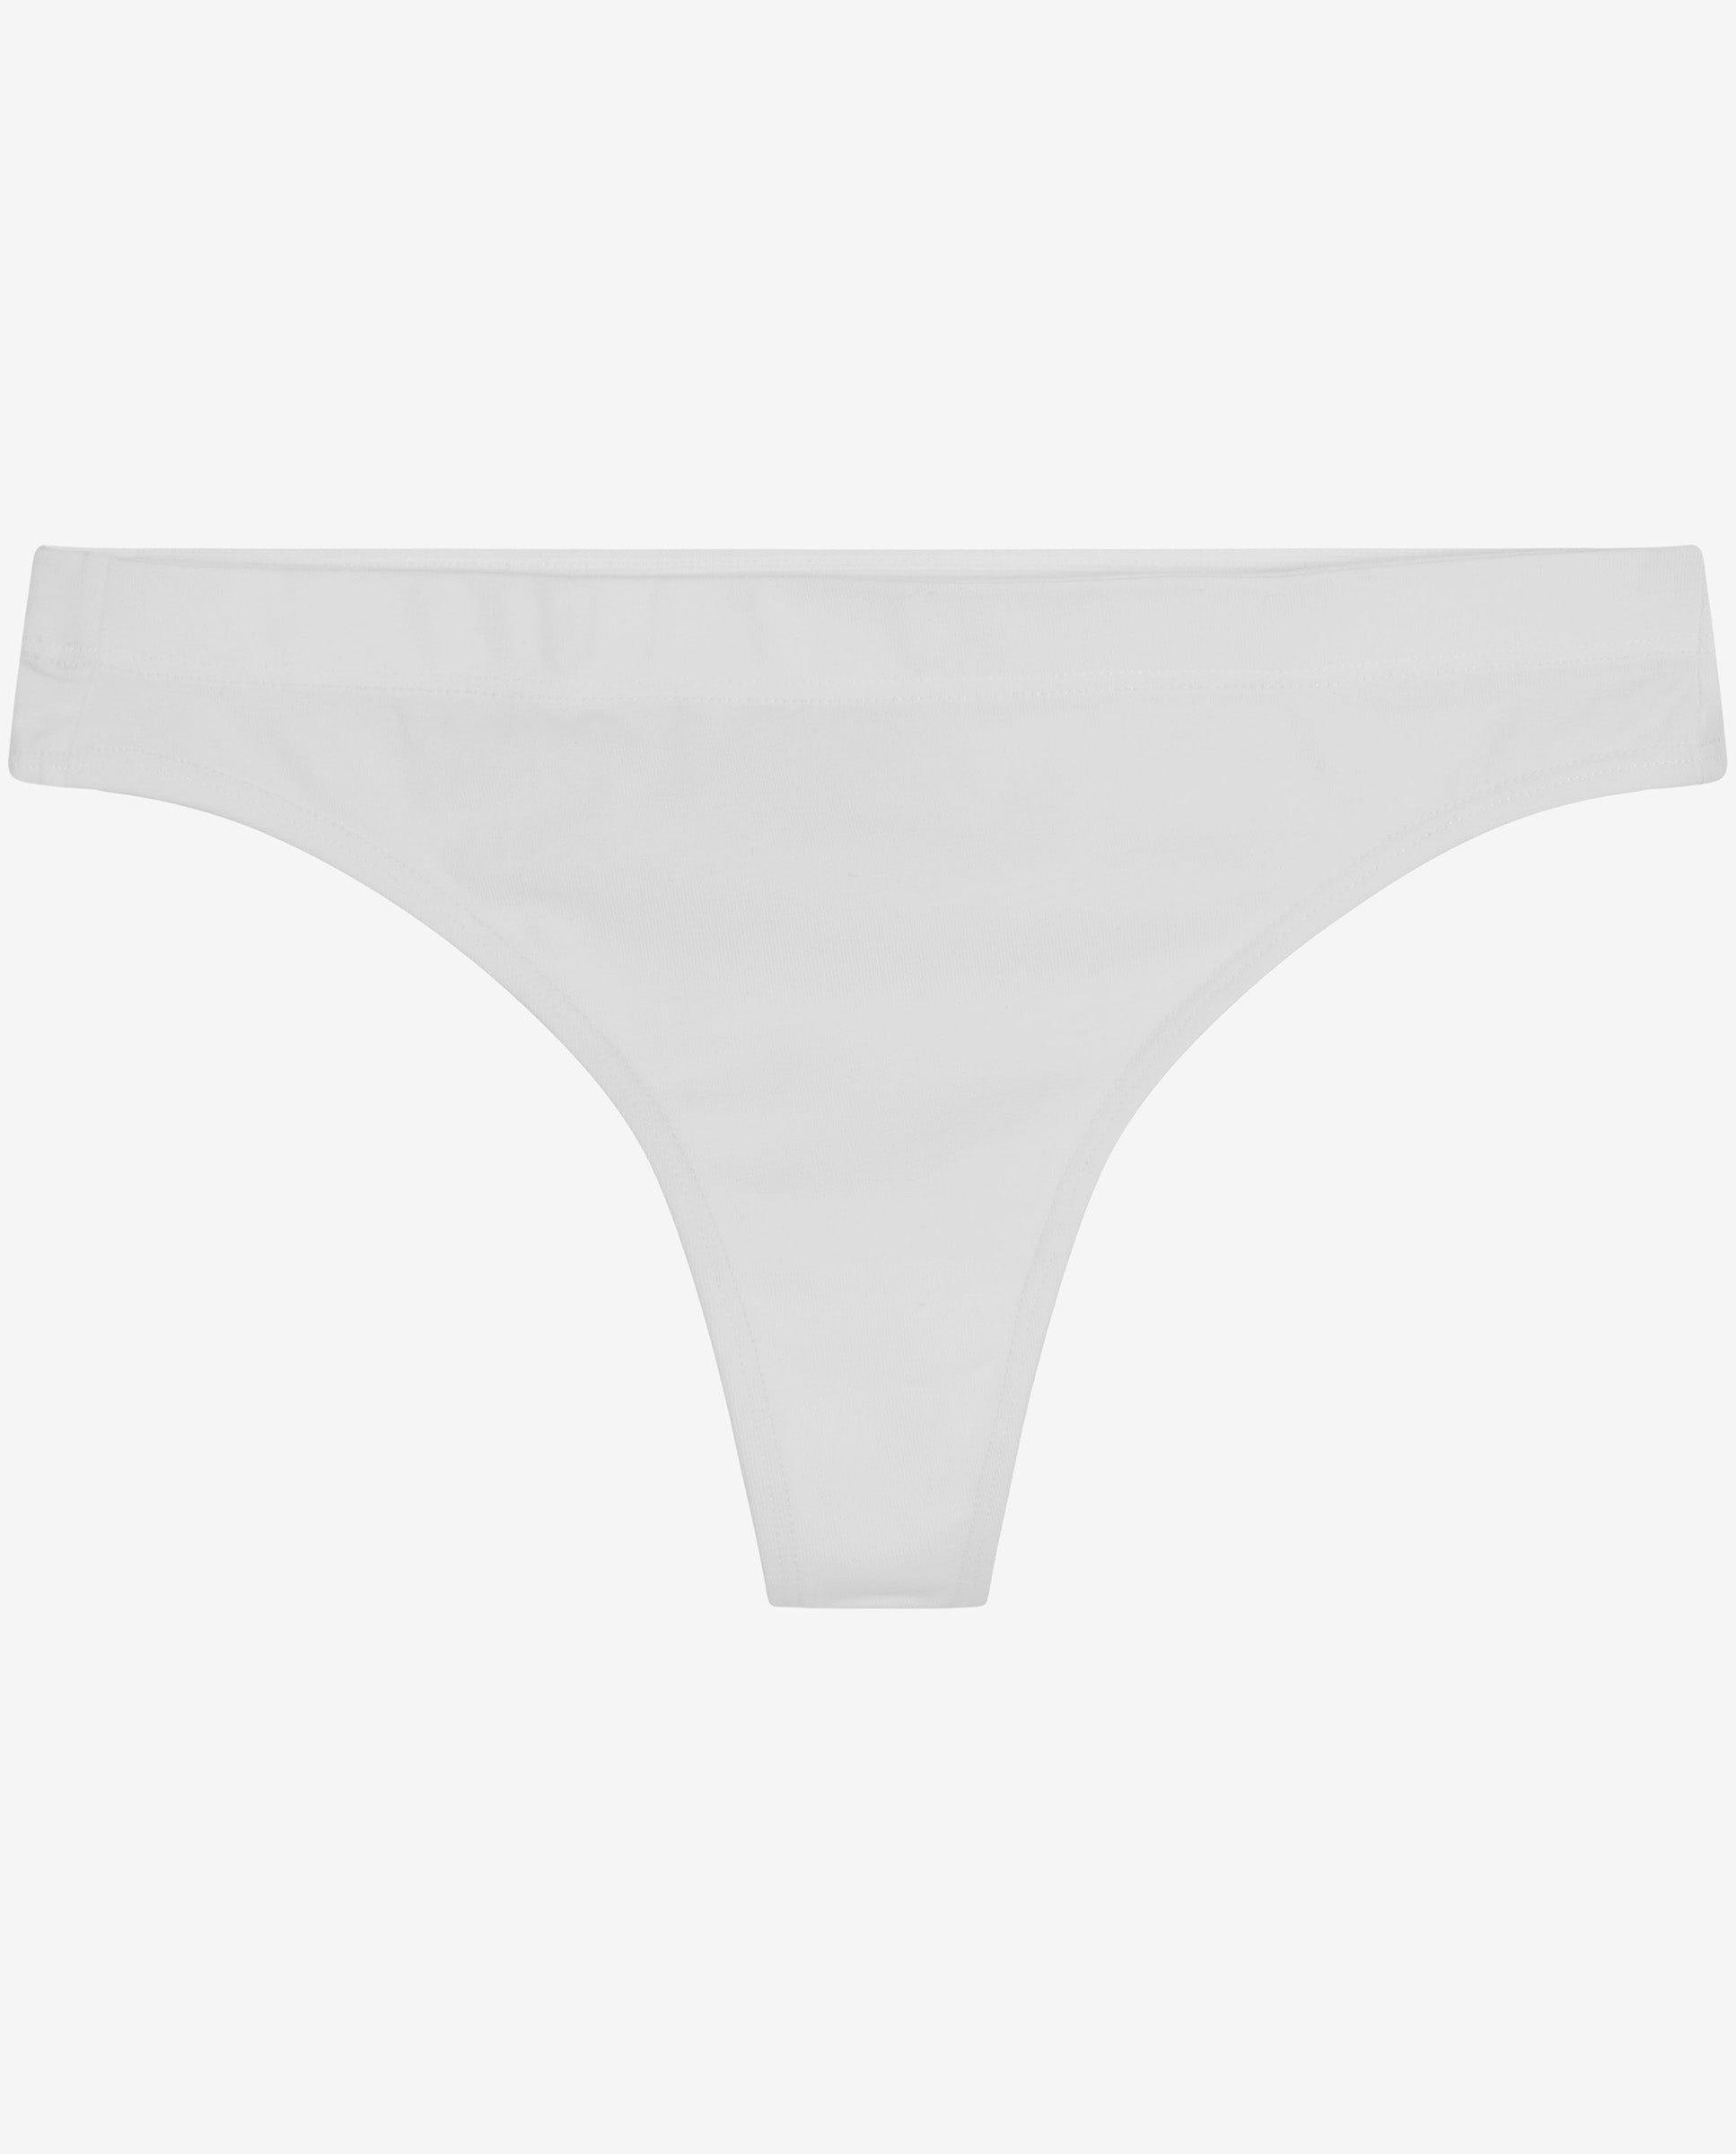 Cotton thong white – 90703-0001